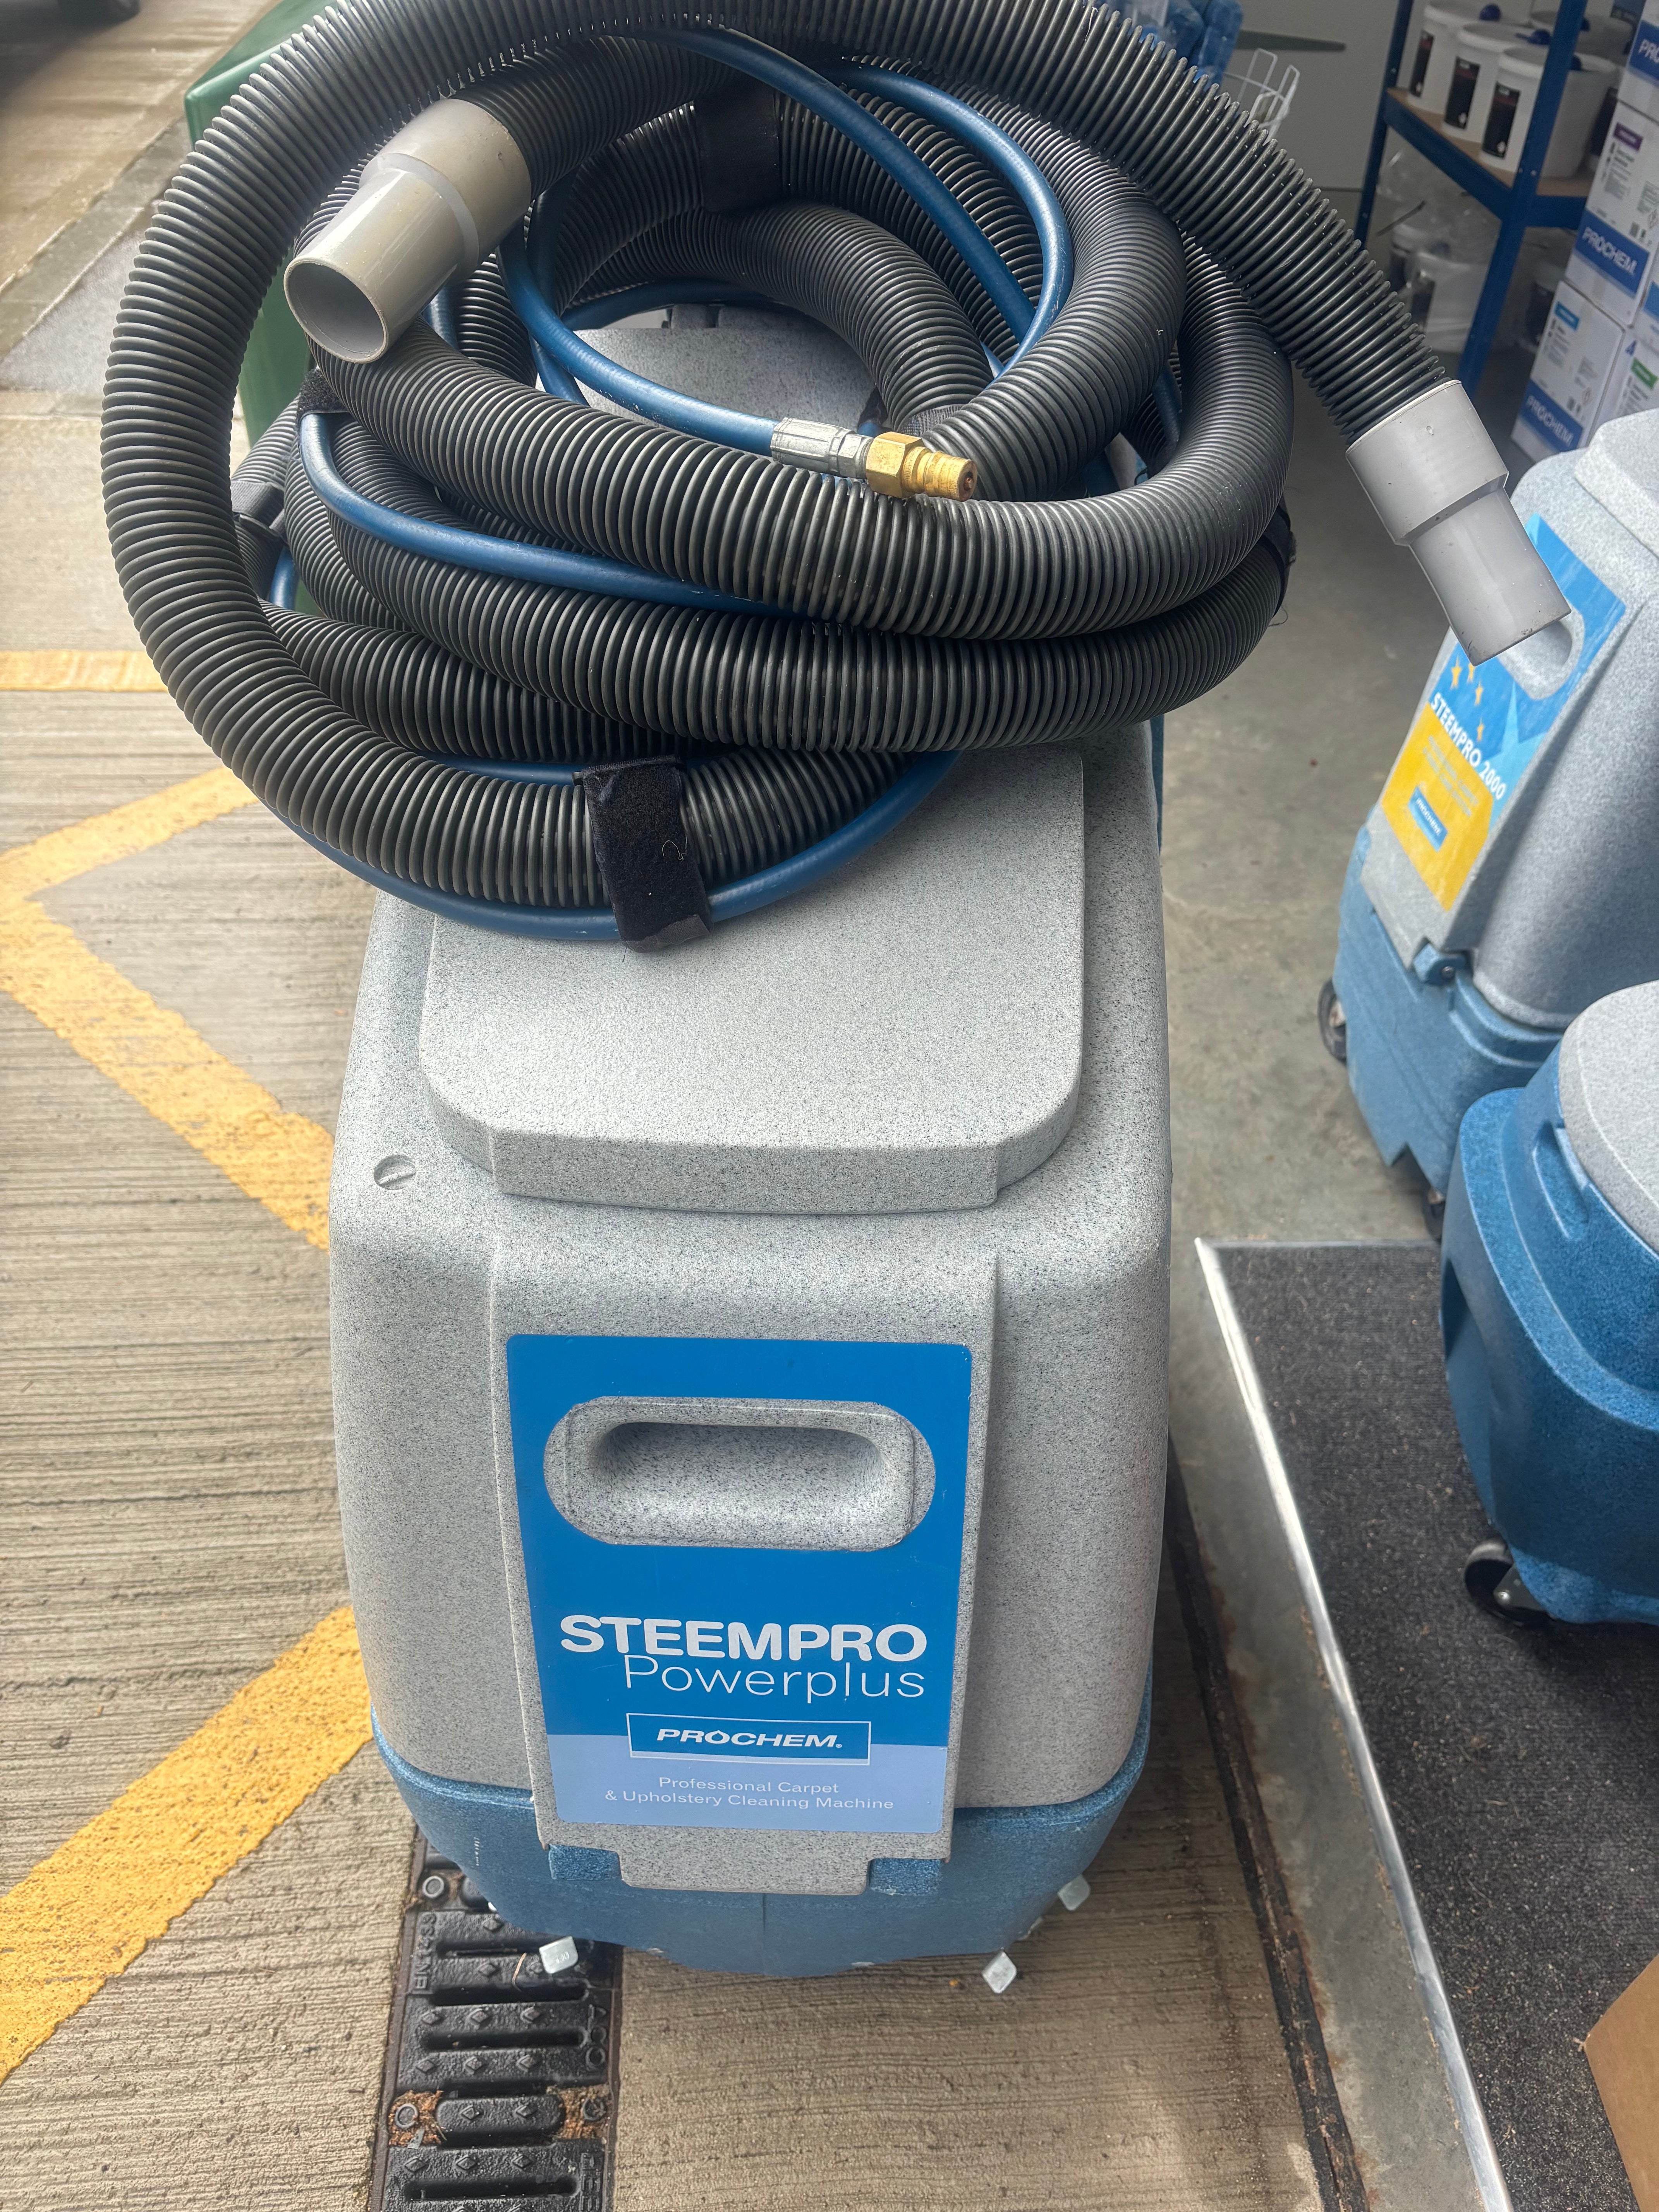 Refurbished Prochem Steempro Powerplus SX2700 Carpet Cleaning Machine